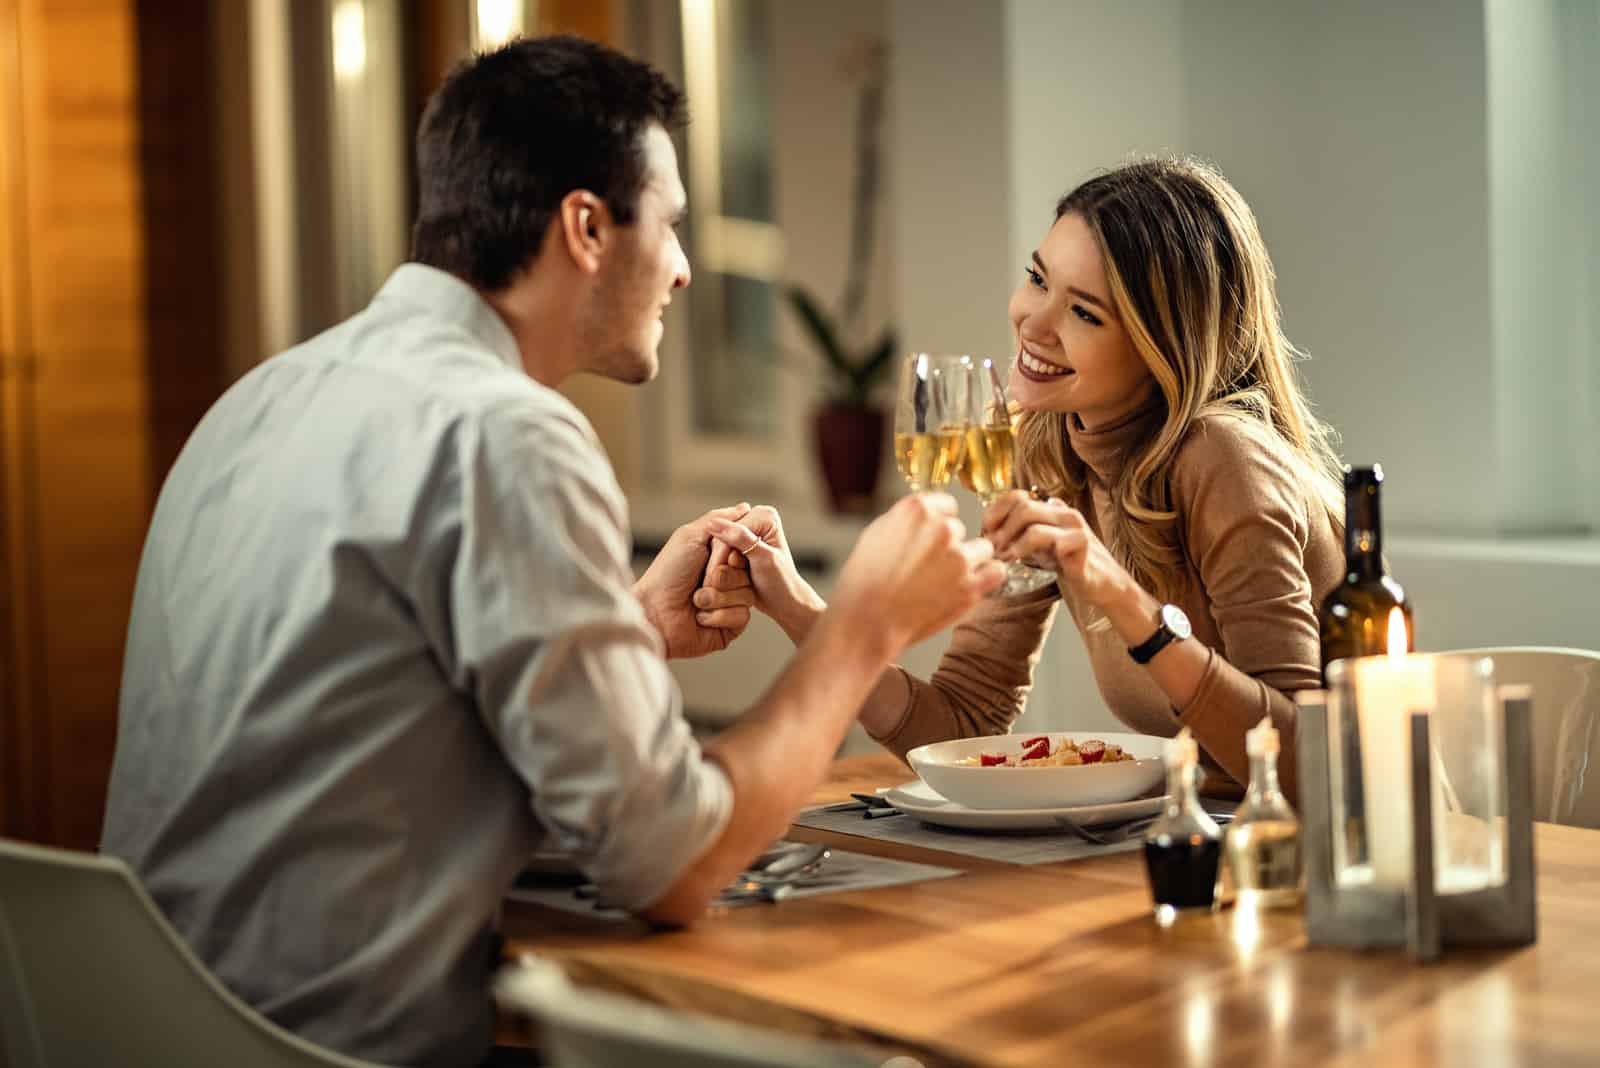 el hombre coge de la mano a la mujer mientras se sientan a cenar